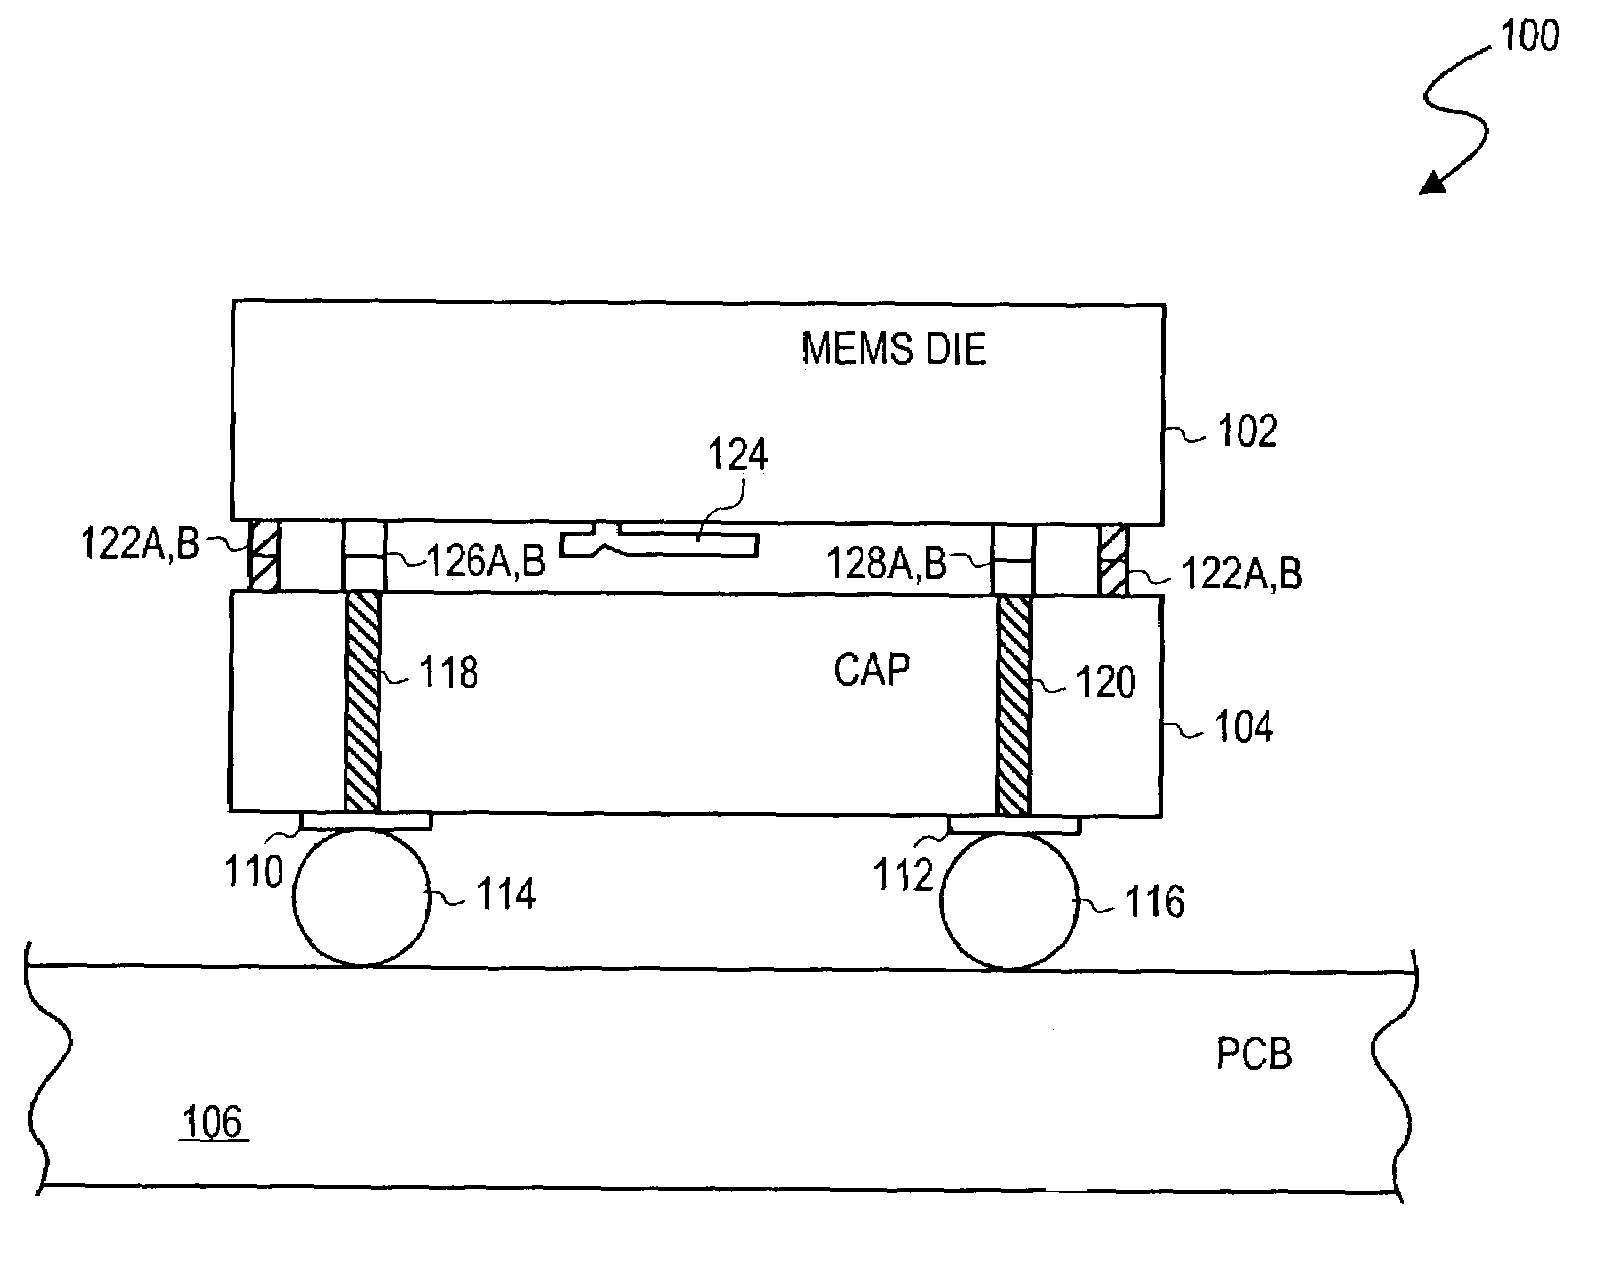 MEMS RF switch module including a vertical via